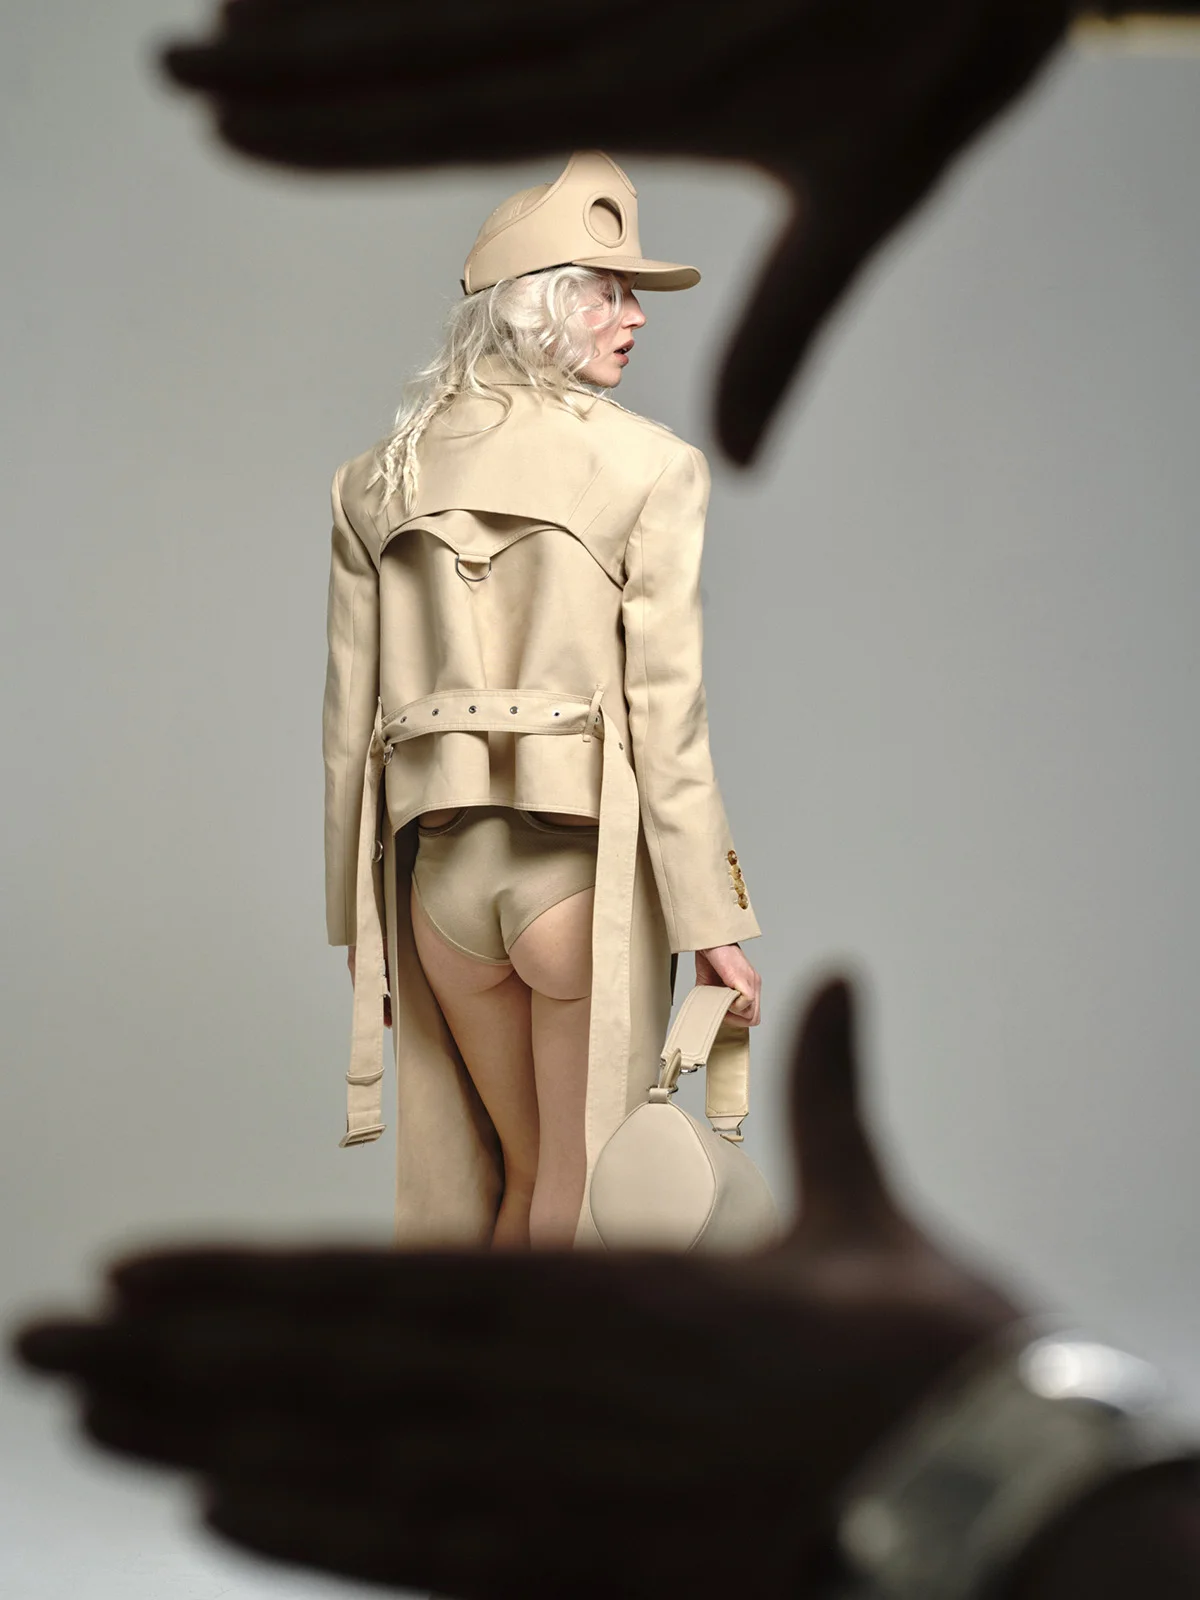 Ola Rudnicka by Hunter & Gatti for Madame Figaro March 25th, 2022